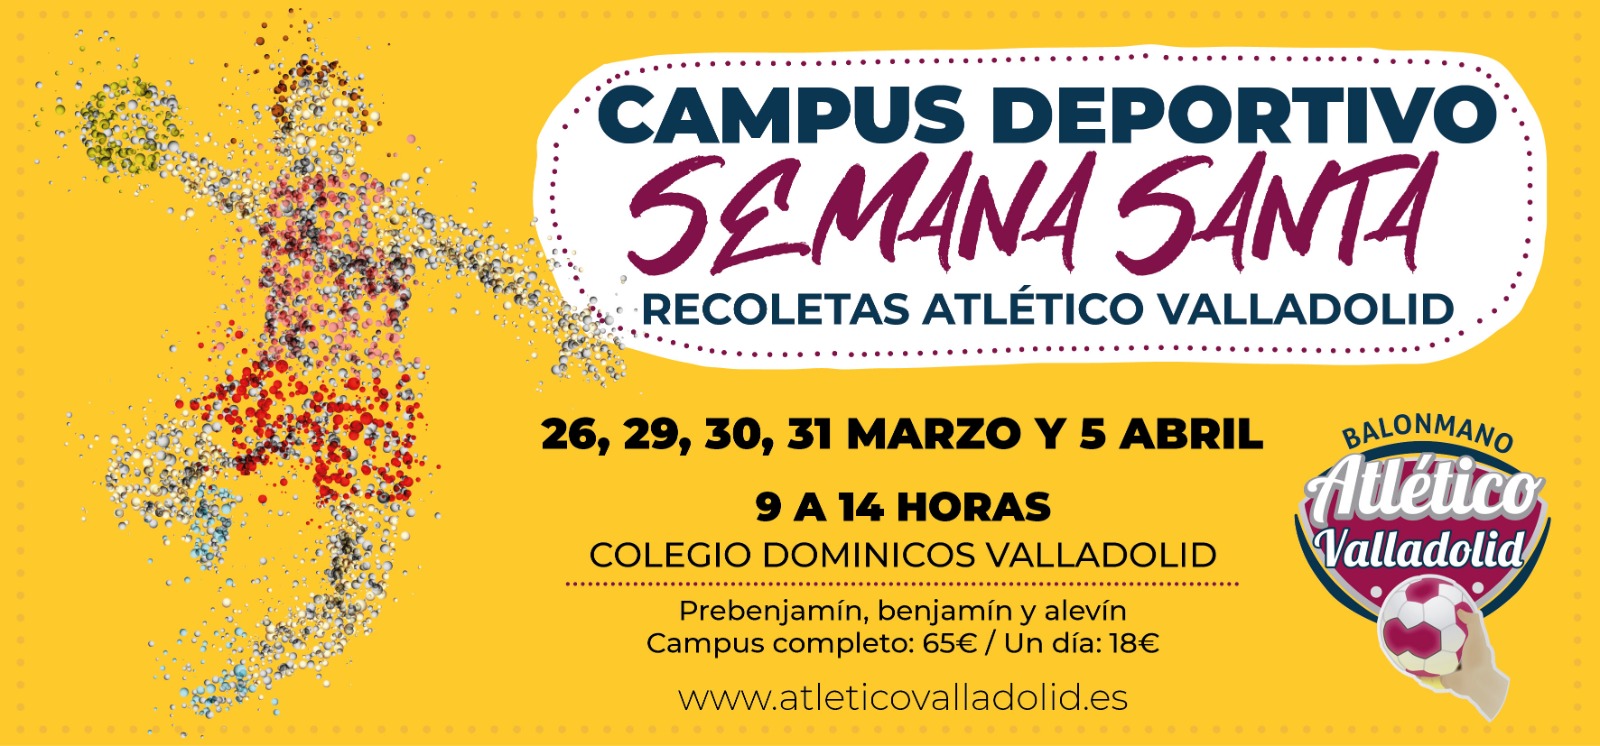 El Recoletas Atlético Valladolid pone en marcha su Campus Deportivo de Semana Santa